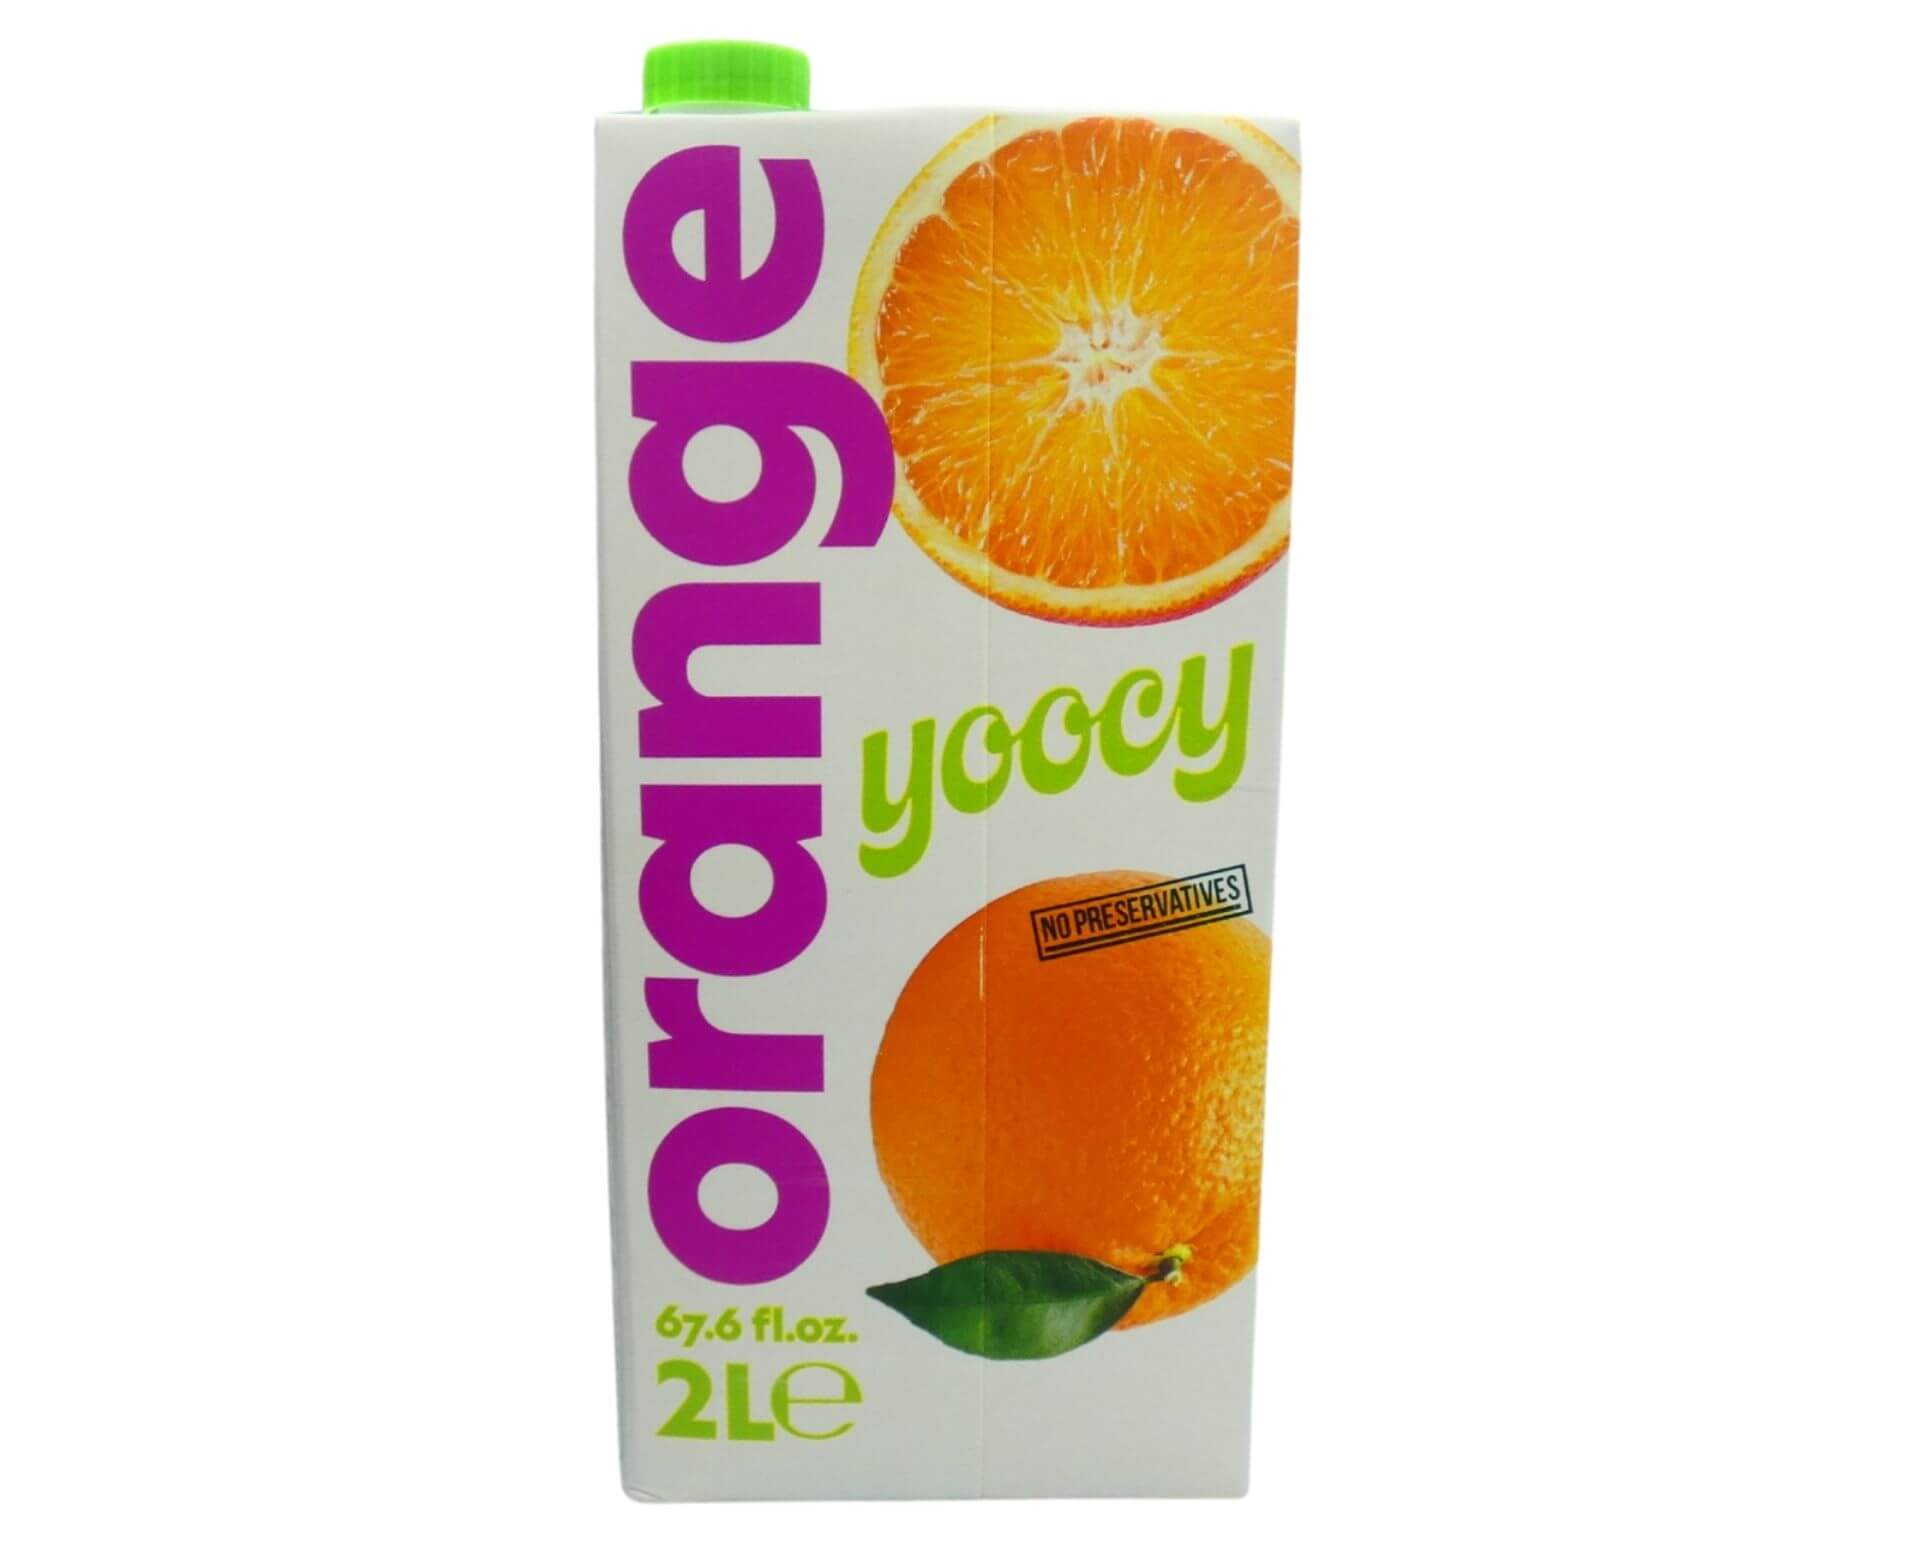 Yoocy Orange Fruit Drink (2 lt) - Aytac Foods